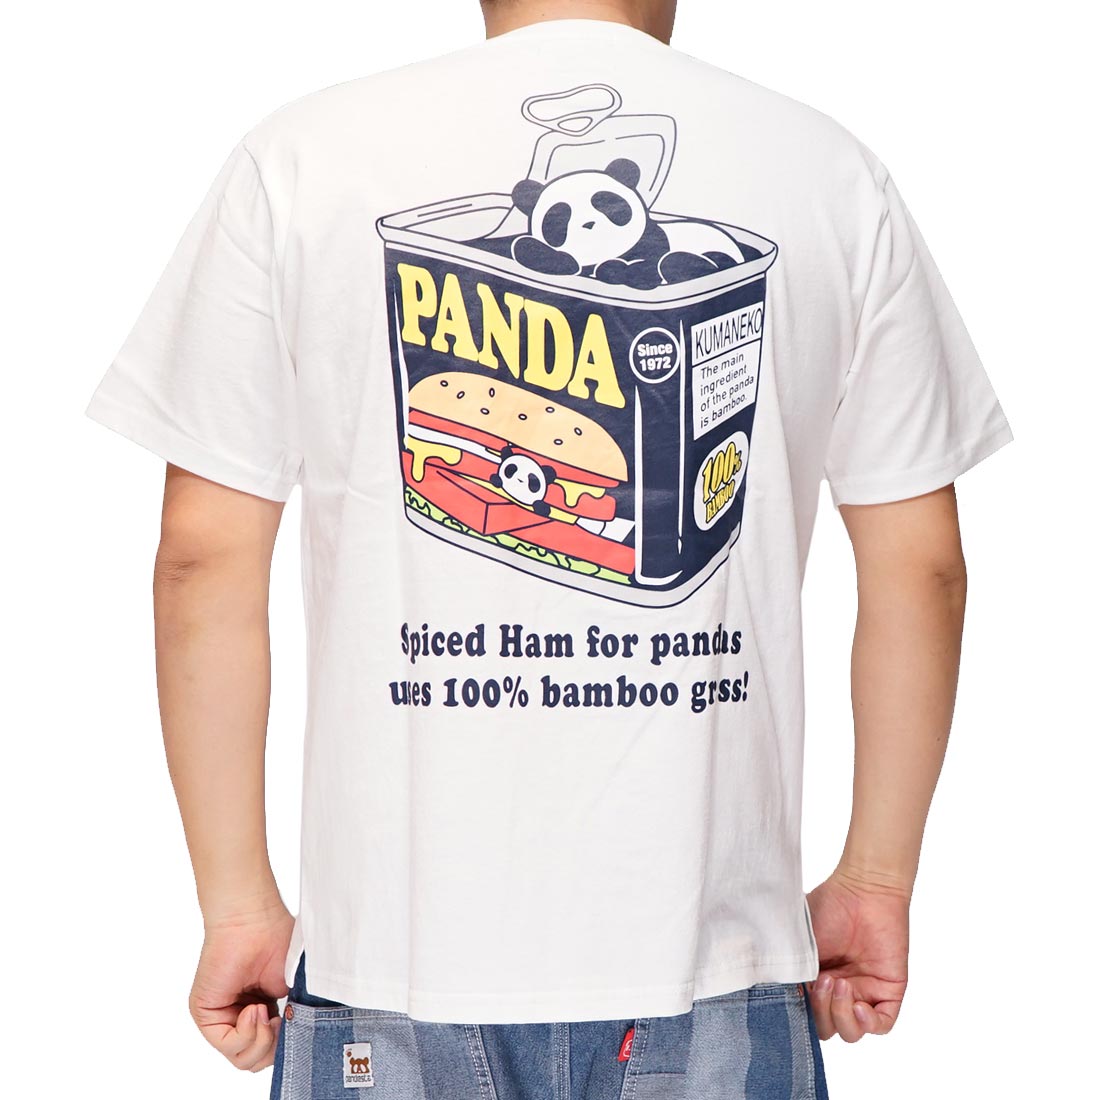 パンディエスタ PANDIESTA Tシャツ 半袖 パンダ スパイスハム メンズ 和柄 523351...